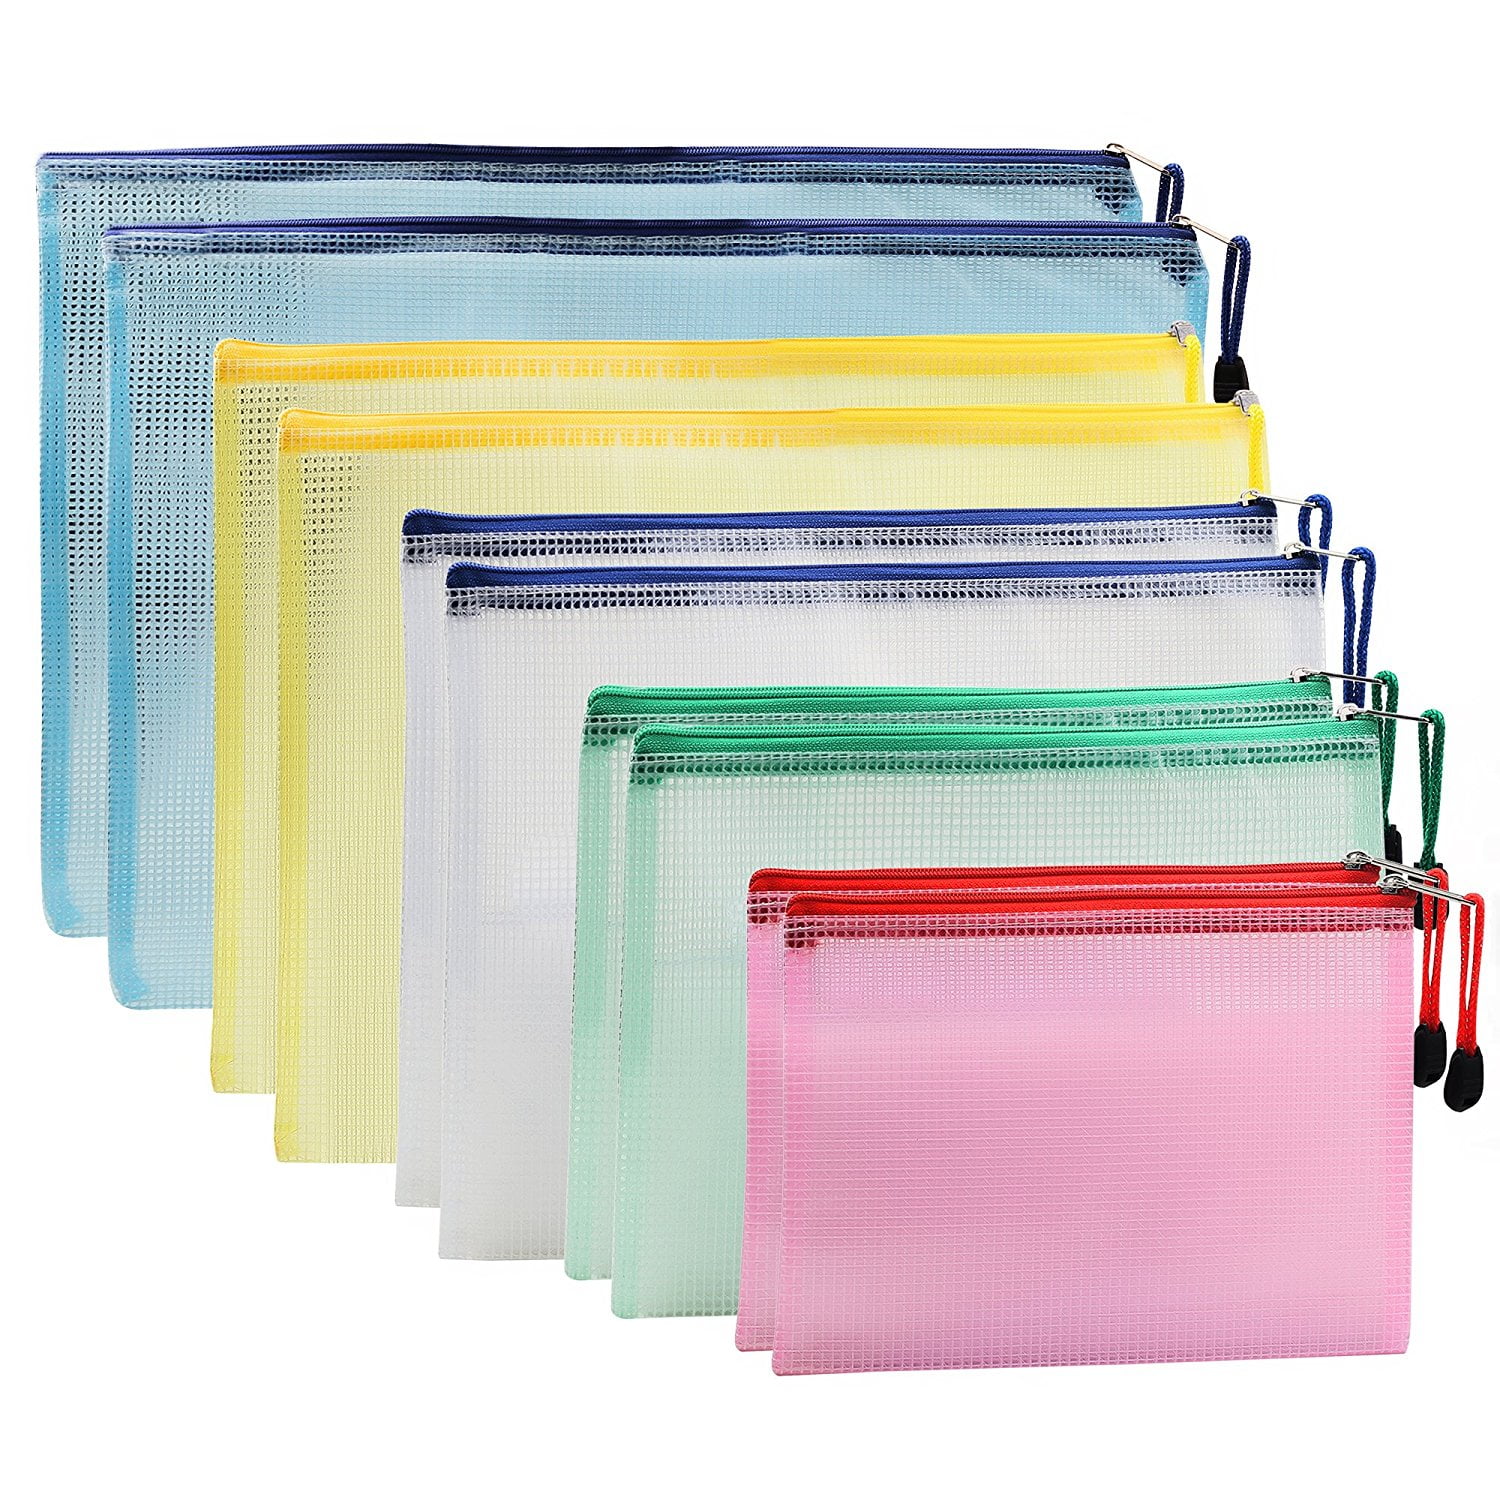 2A2F A4 Clear Plastic Zip File Bags Storage Waterproof Folder Wallet Sleeve DEA2 